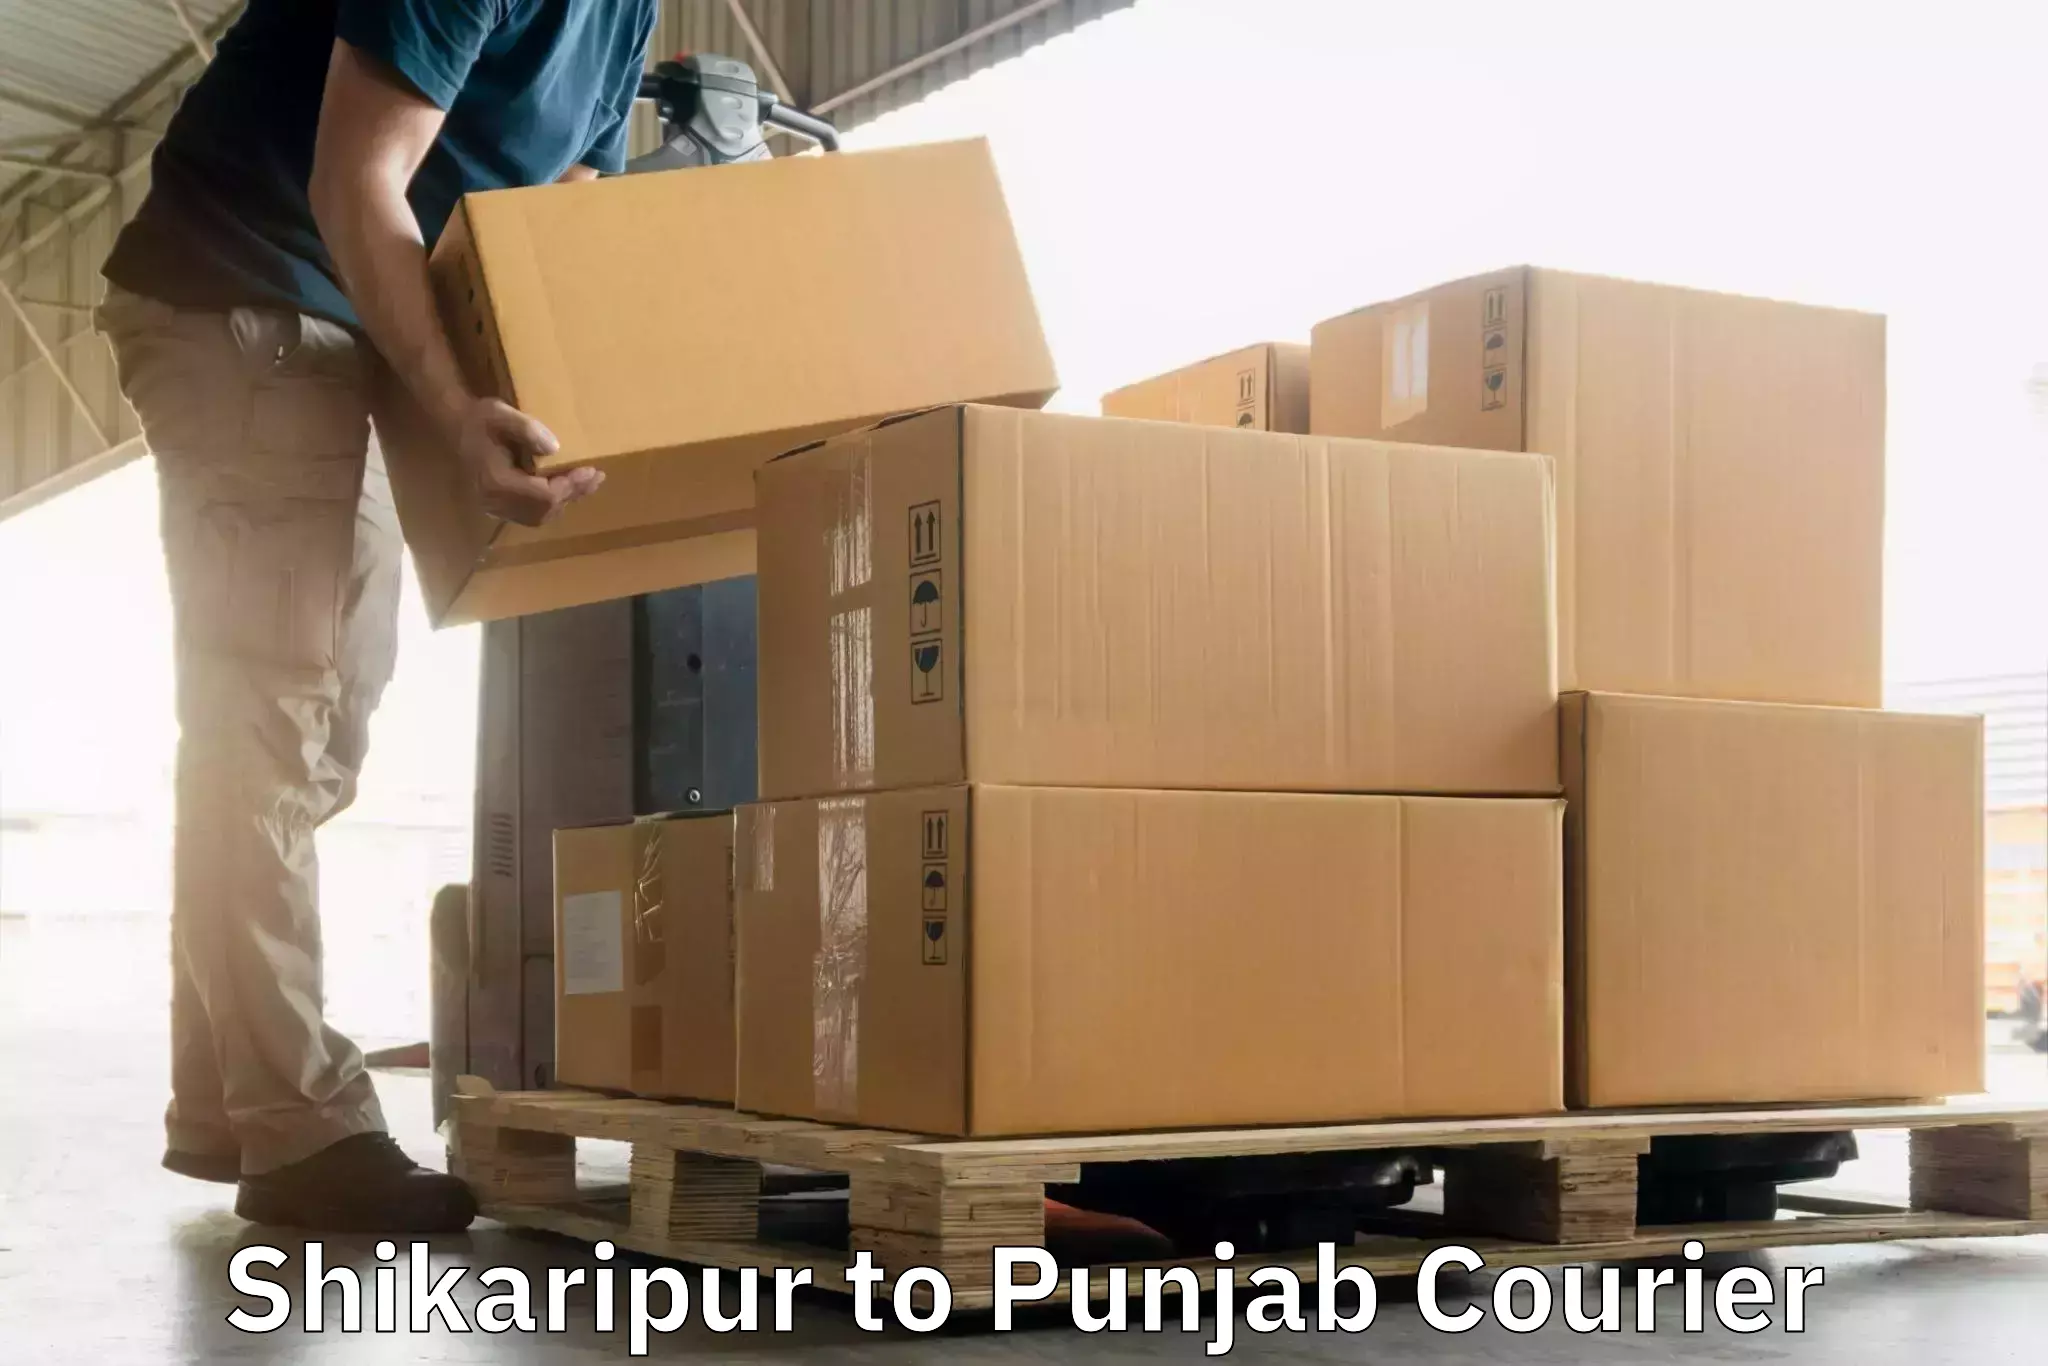 Affordable logistics services Shikaripur to Faridkot